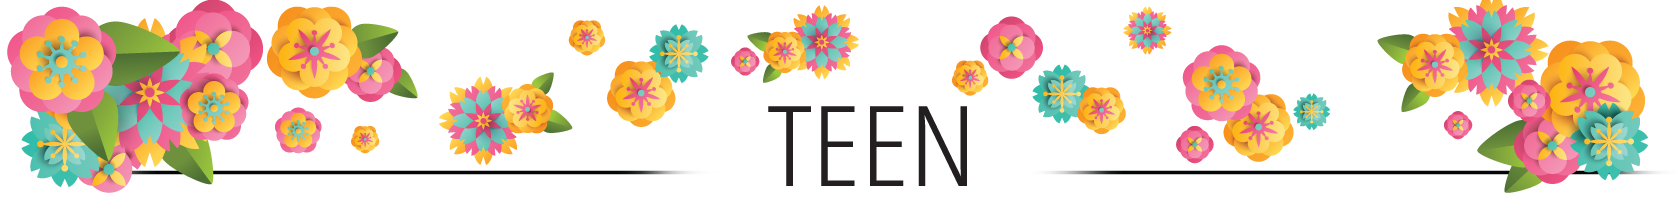 Teen Header Image